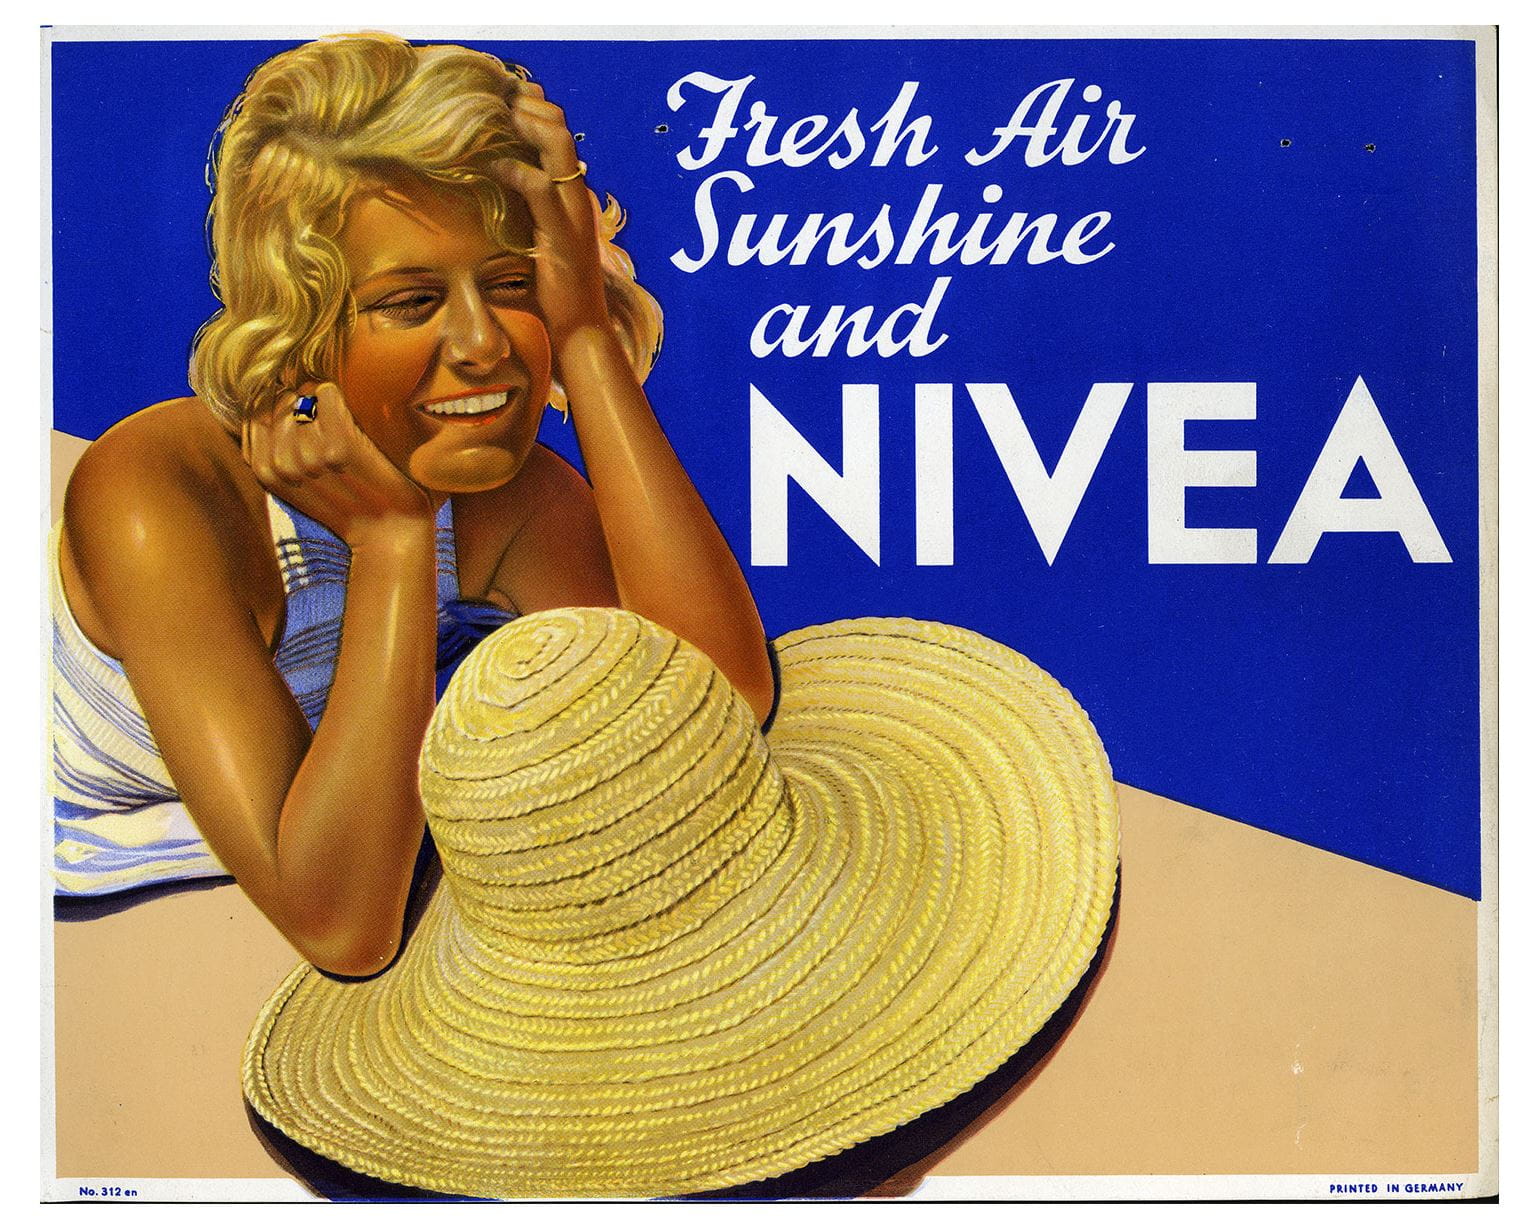 Cartaz publicitário NIVEA de 1935